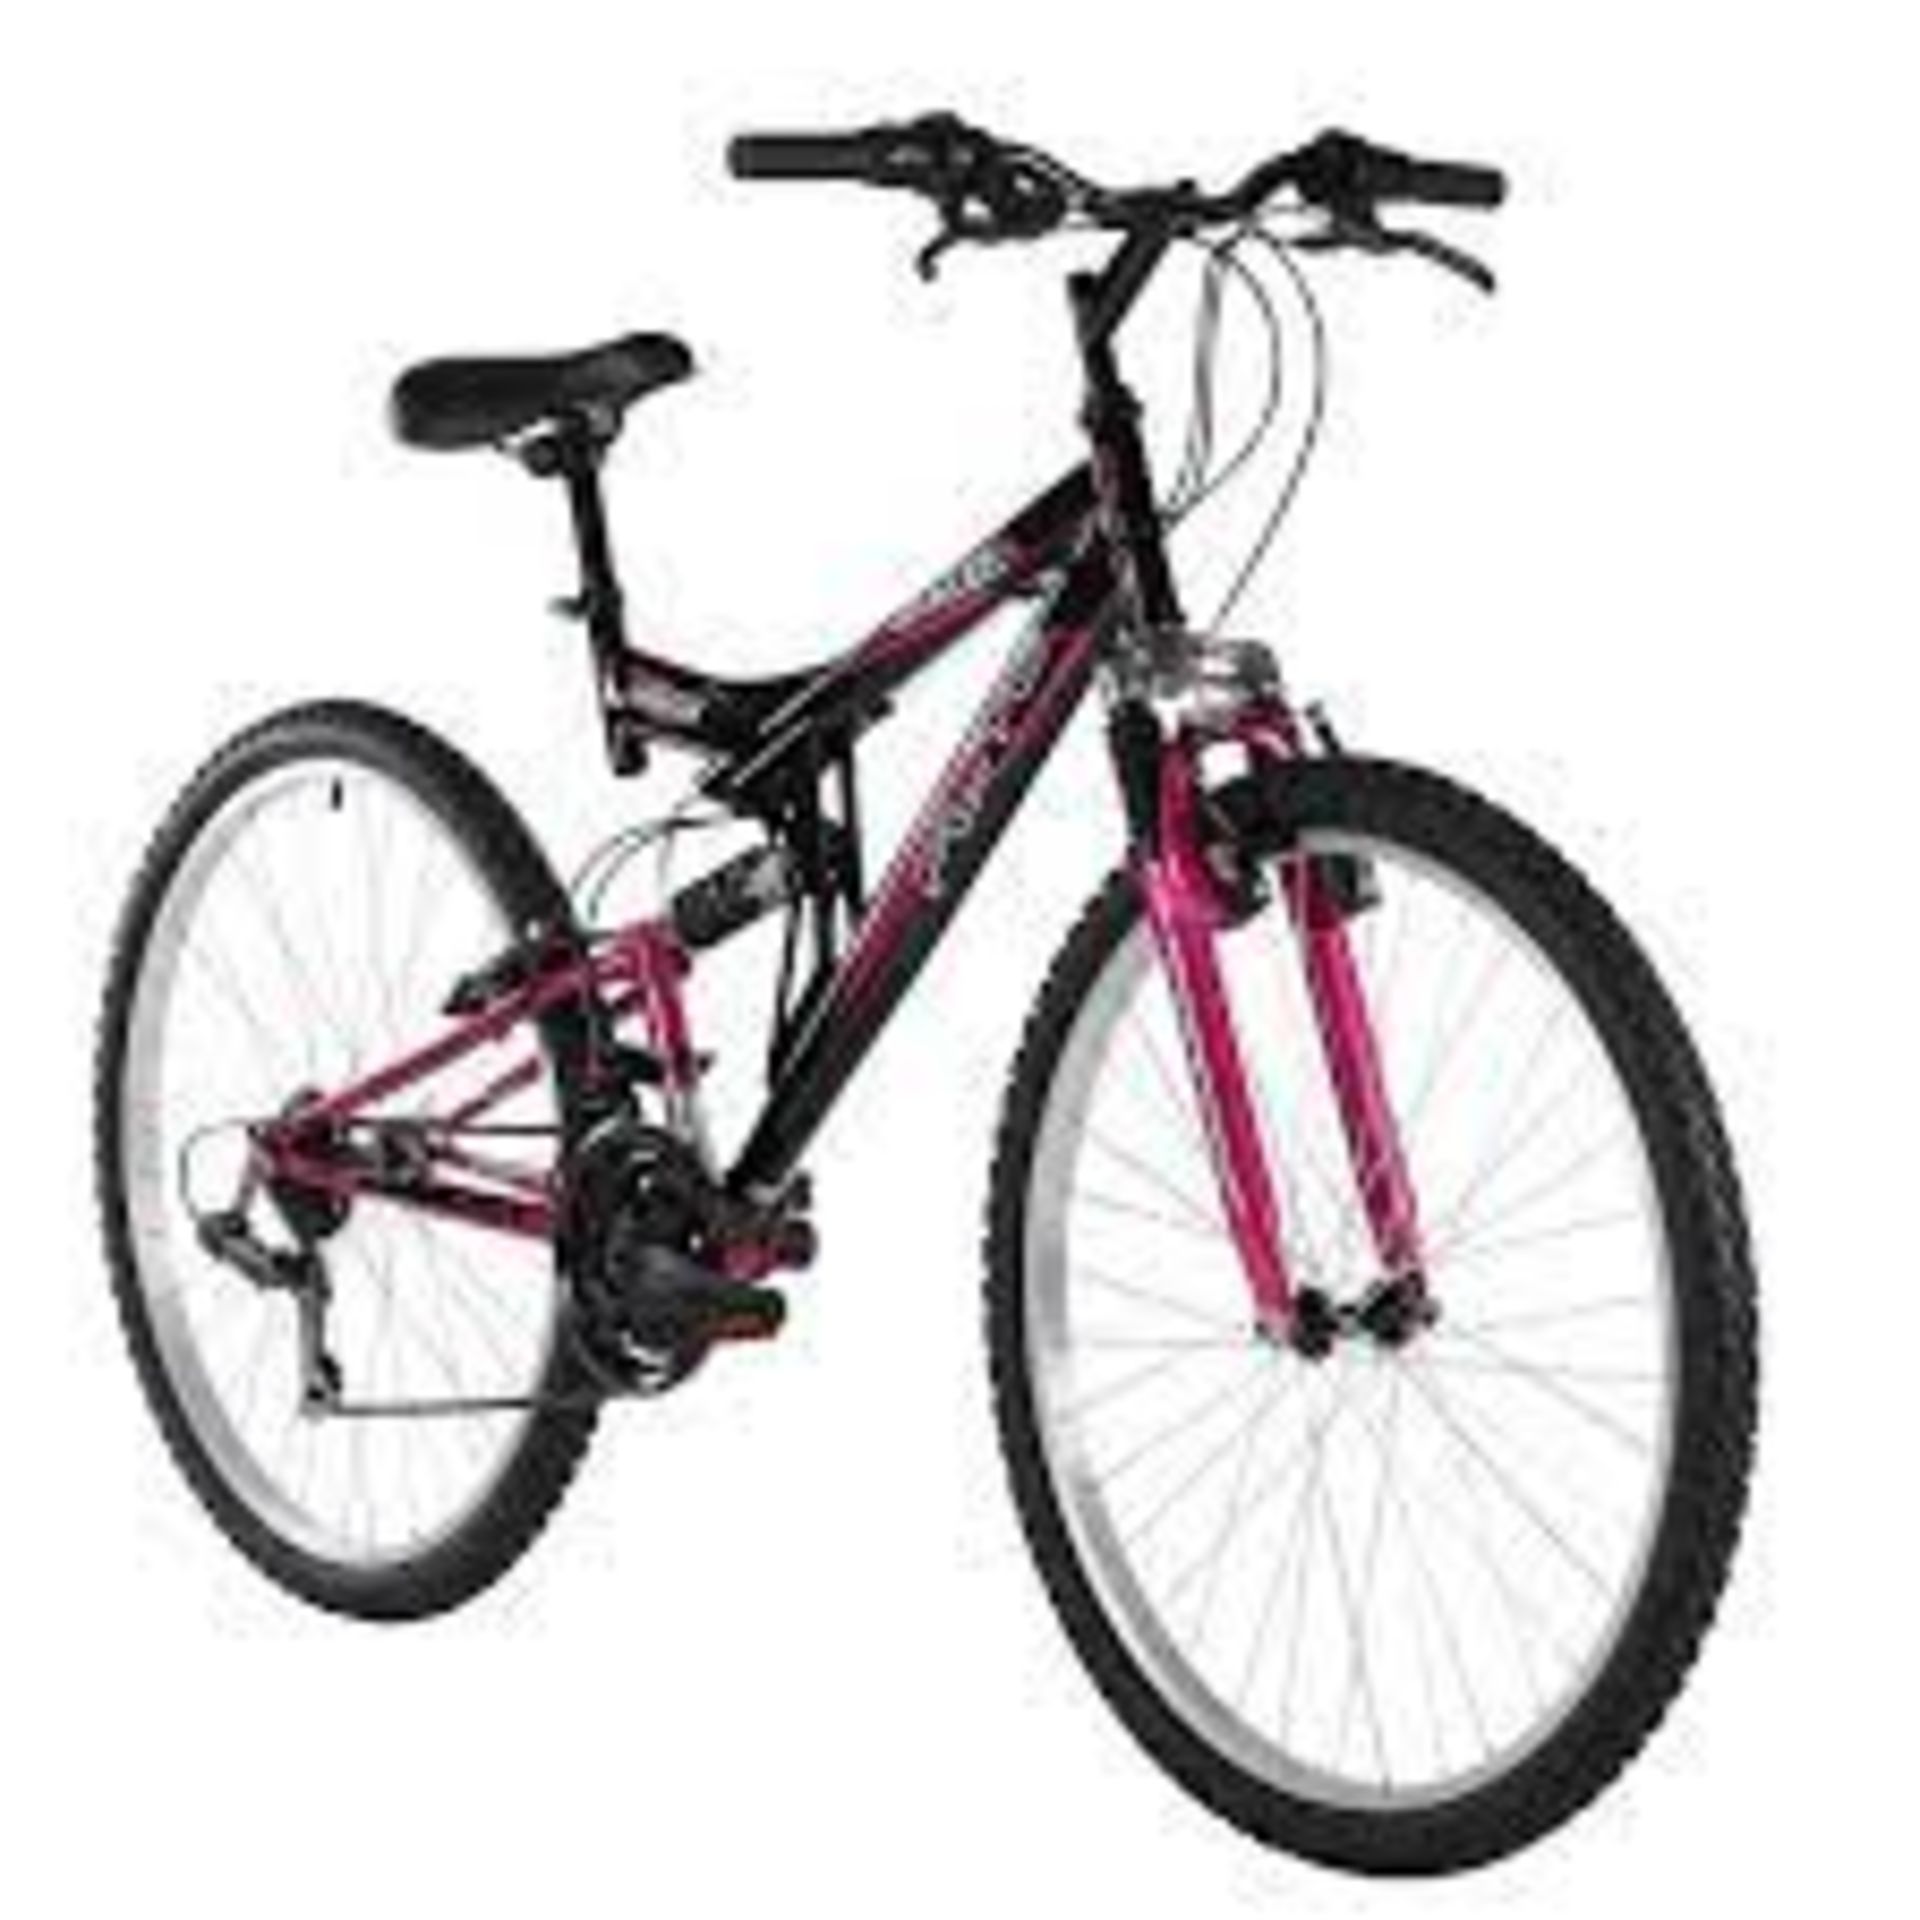 (REF118307) Flite Taser Women's Mountain Bike RRP 359.99